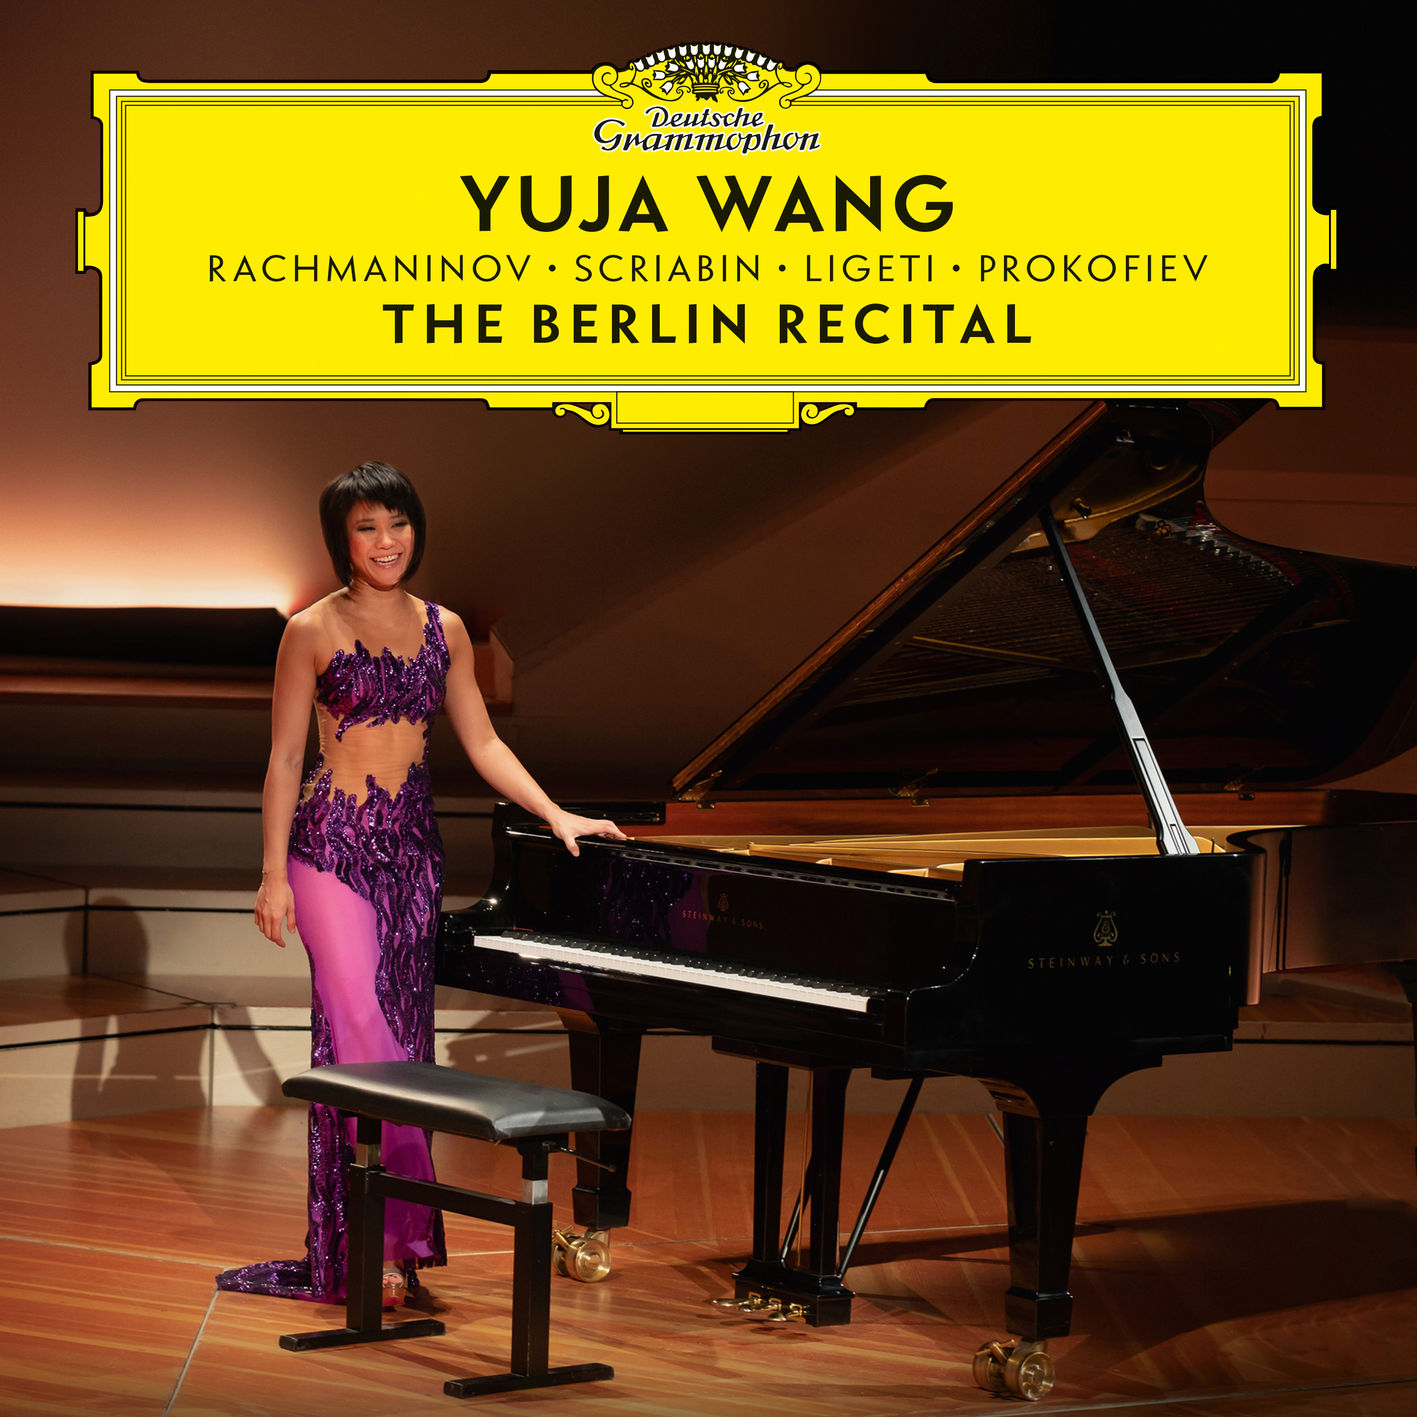 Yuja Wang – The Berlin Recital (2018) [FLAC 24bit/96kHz]